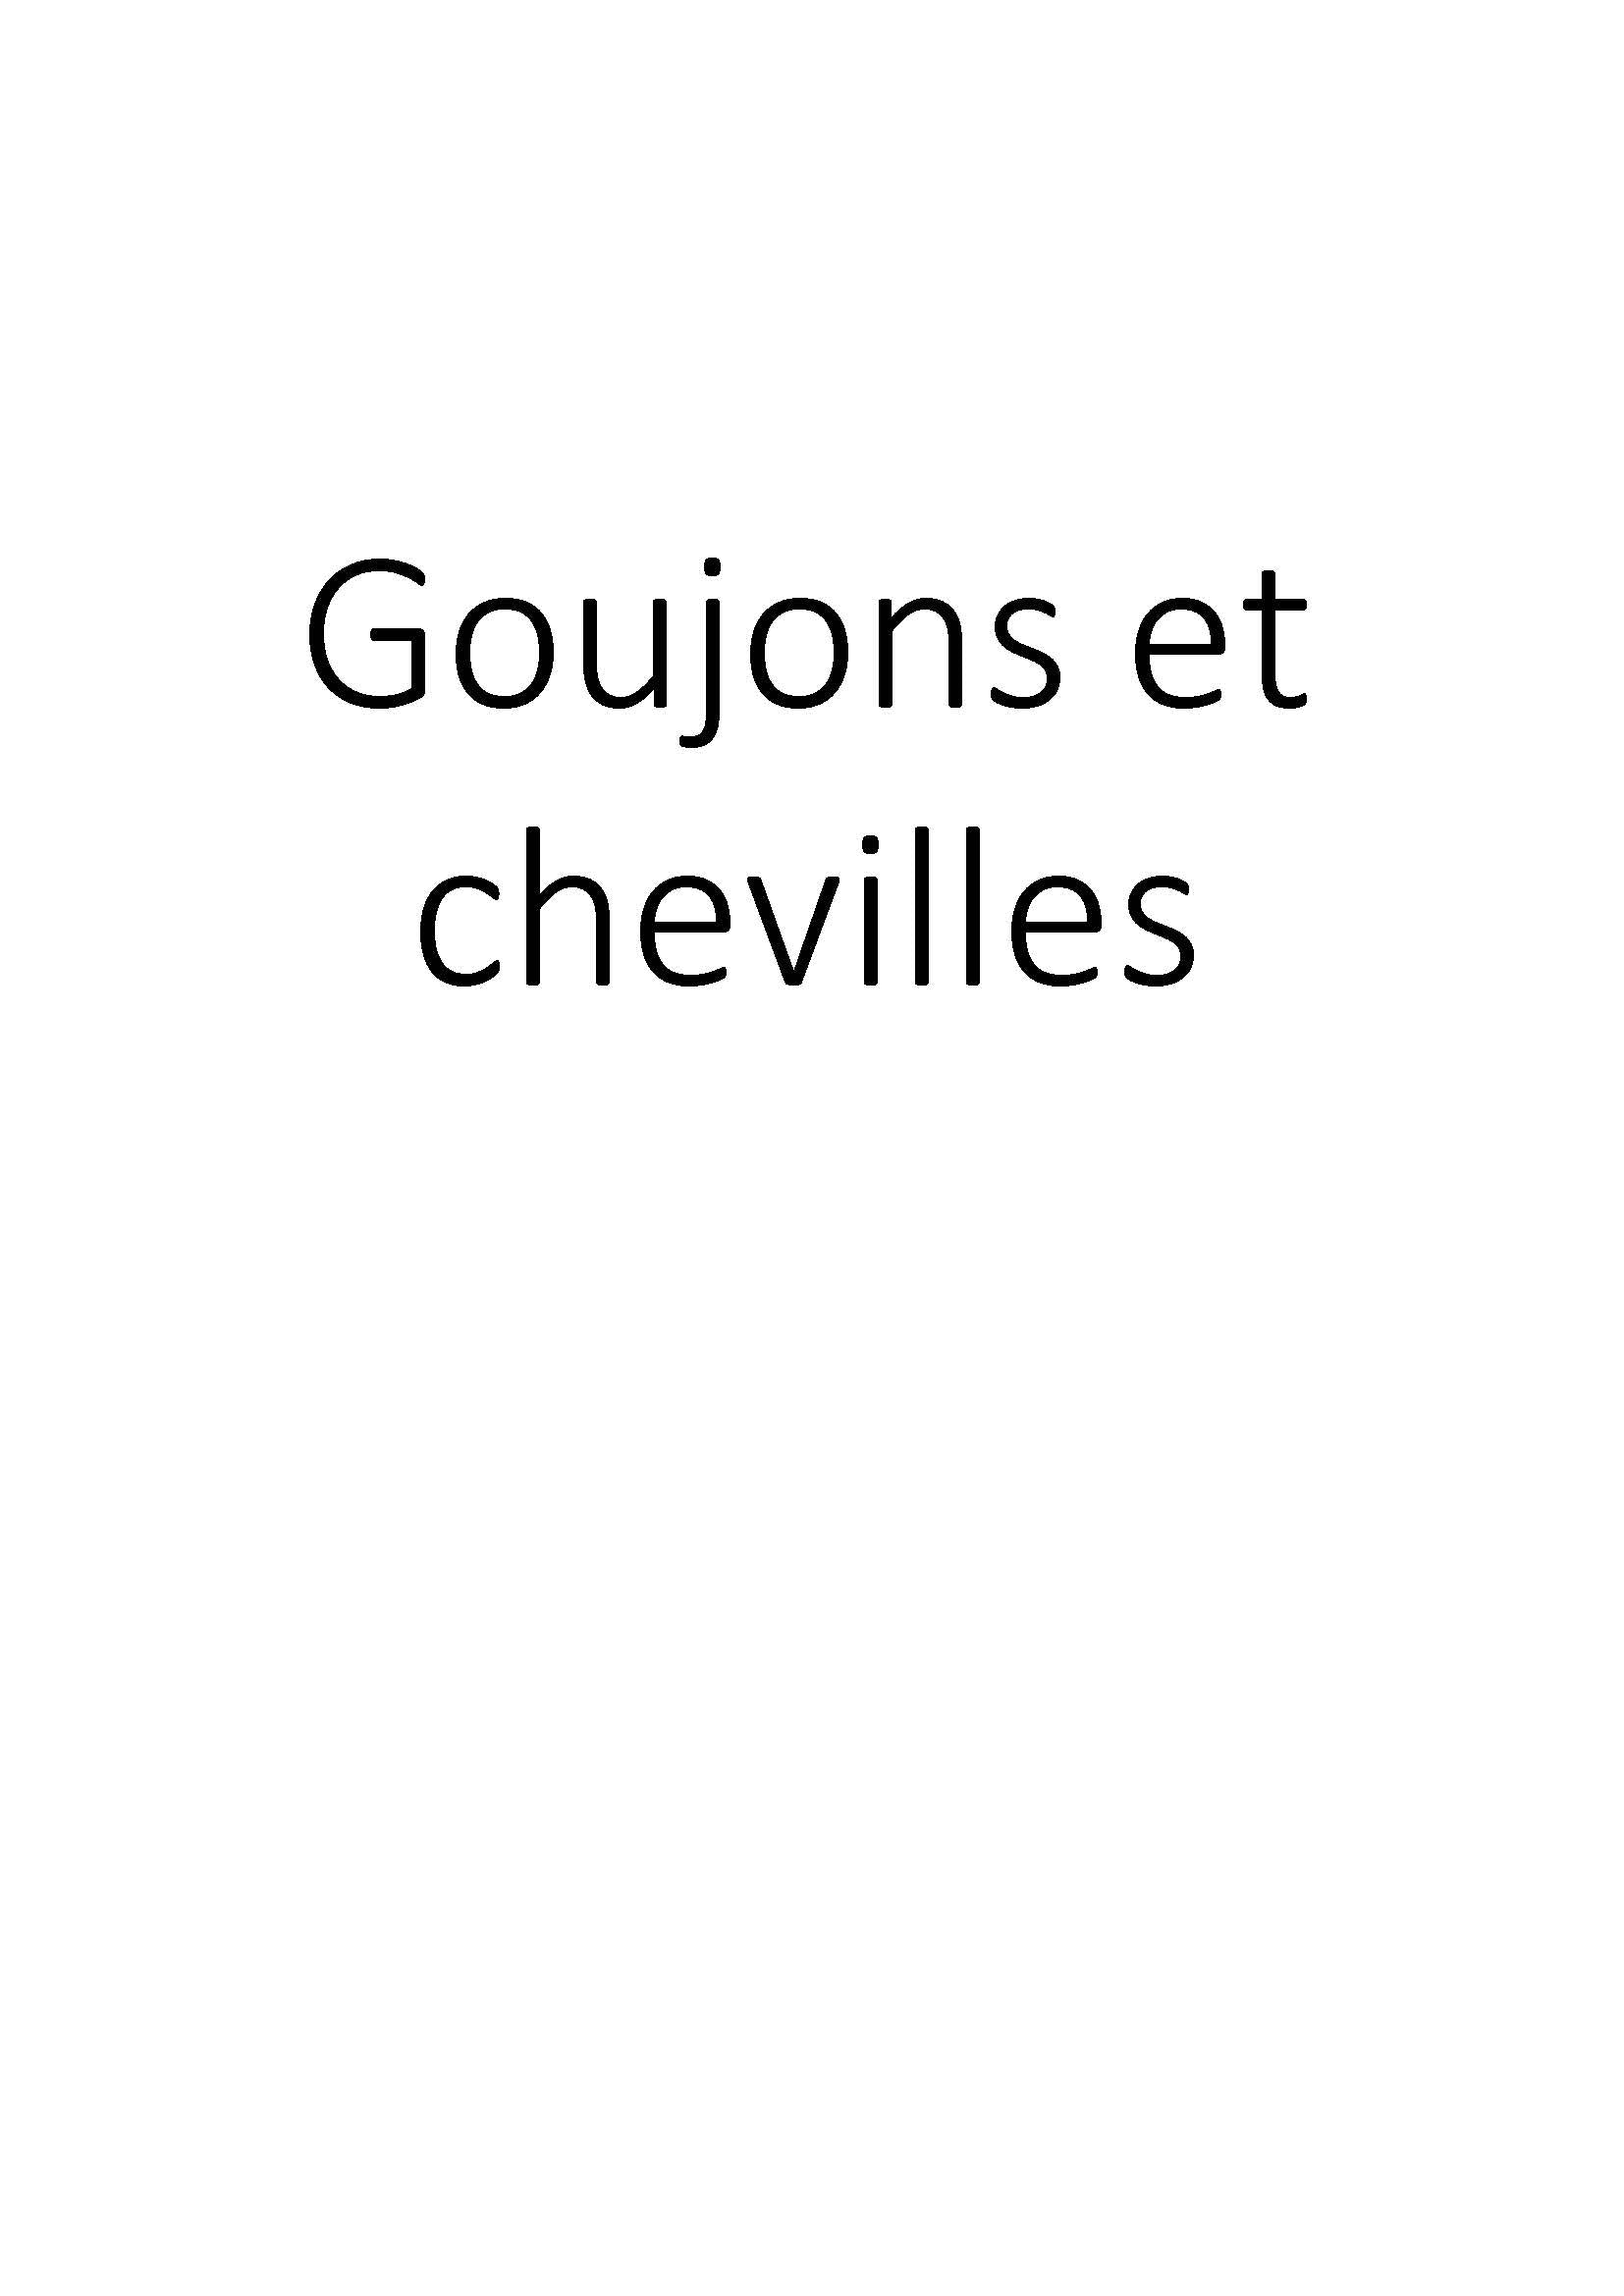 Goujons et chevilles clicktofournisseur.com